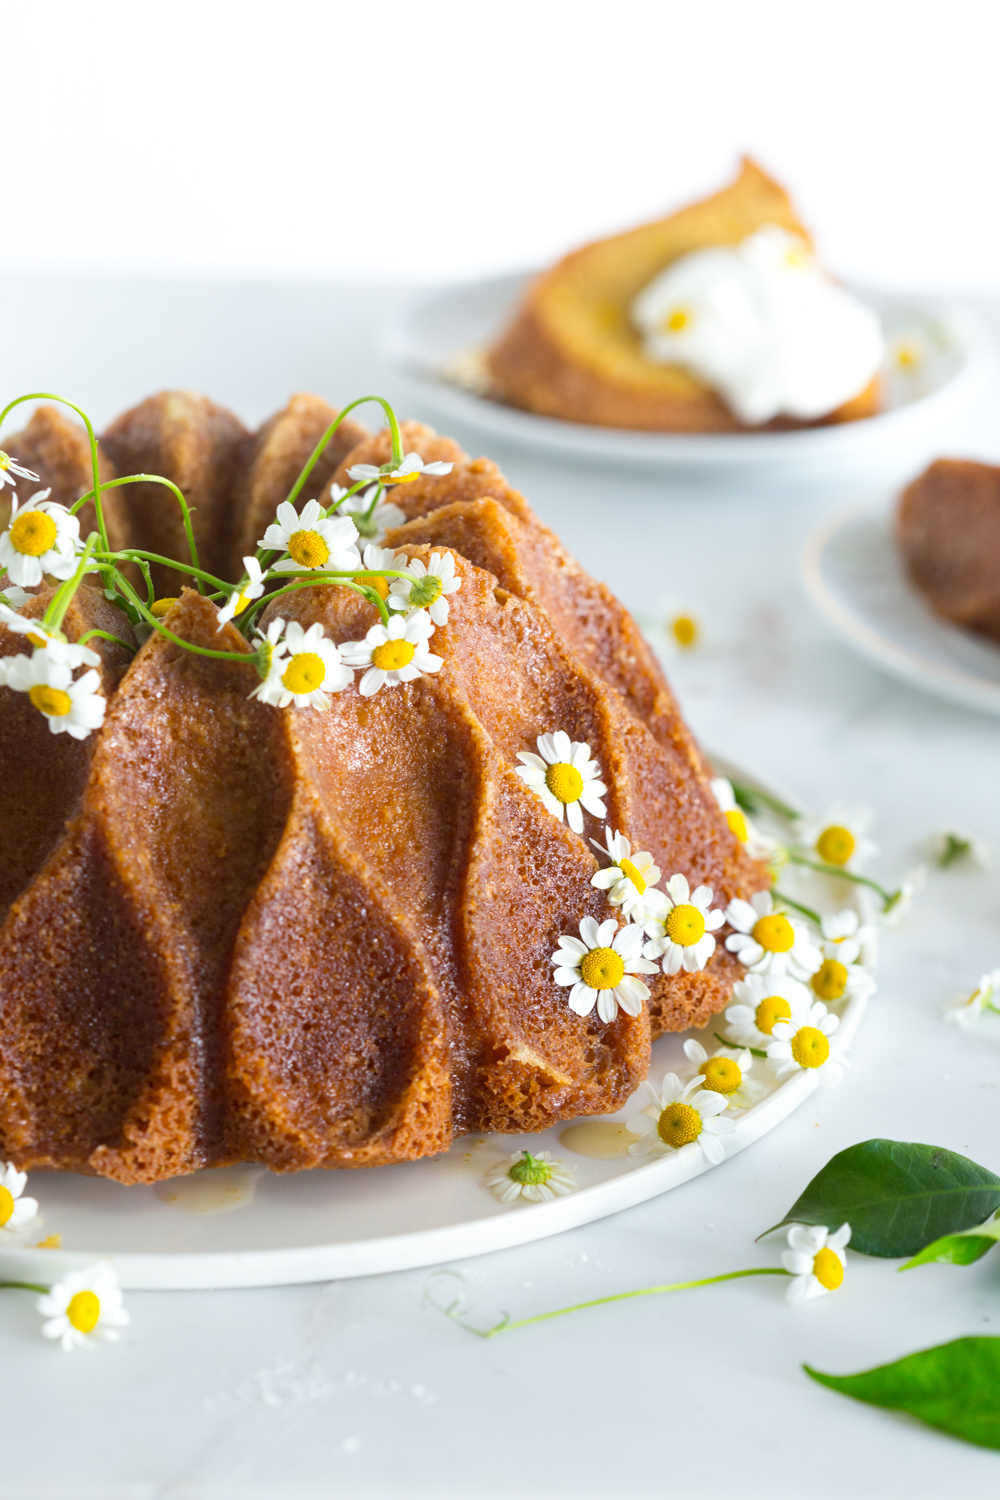 Lemon Chamomile Honey Bundt Cake with chamomile flowers